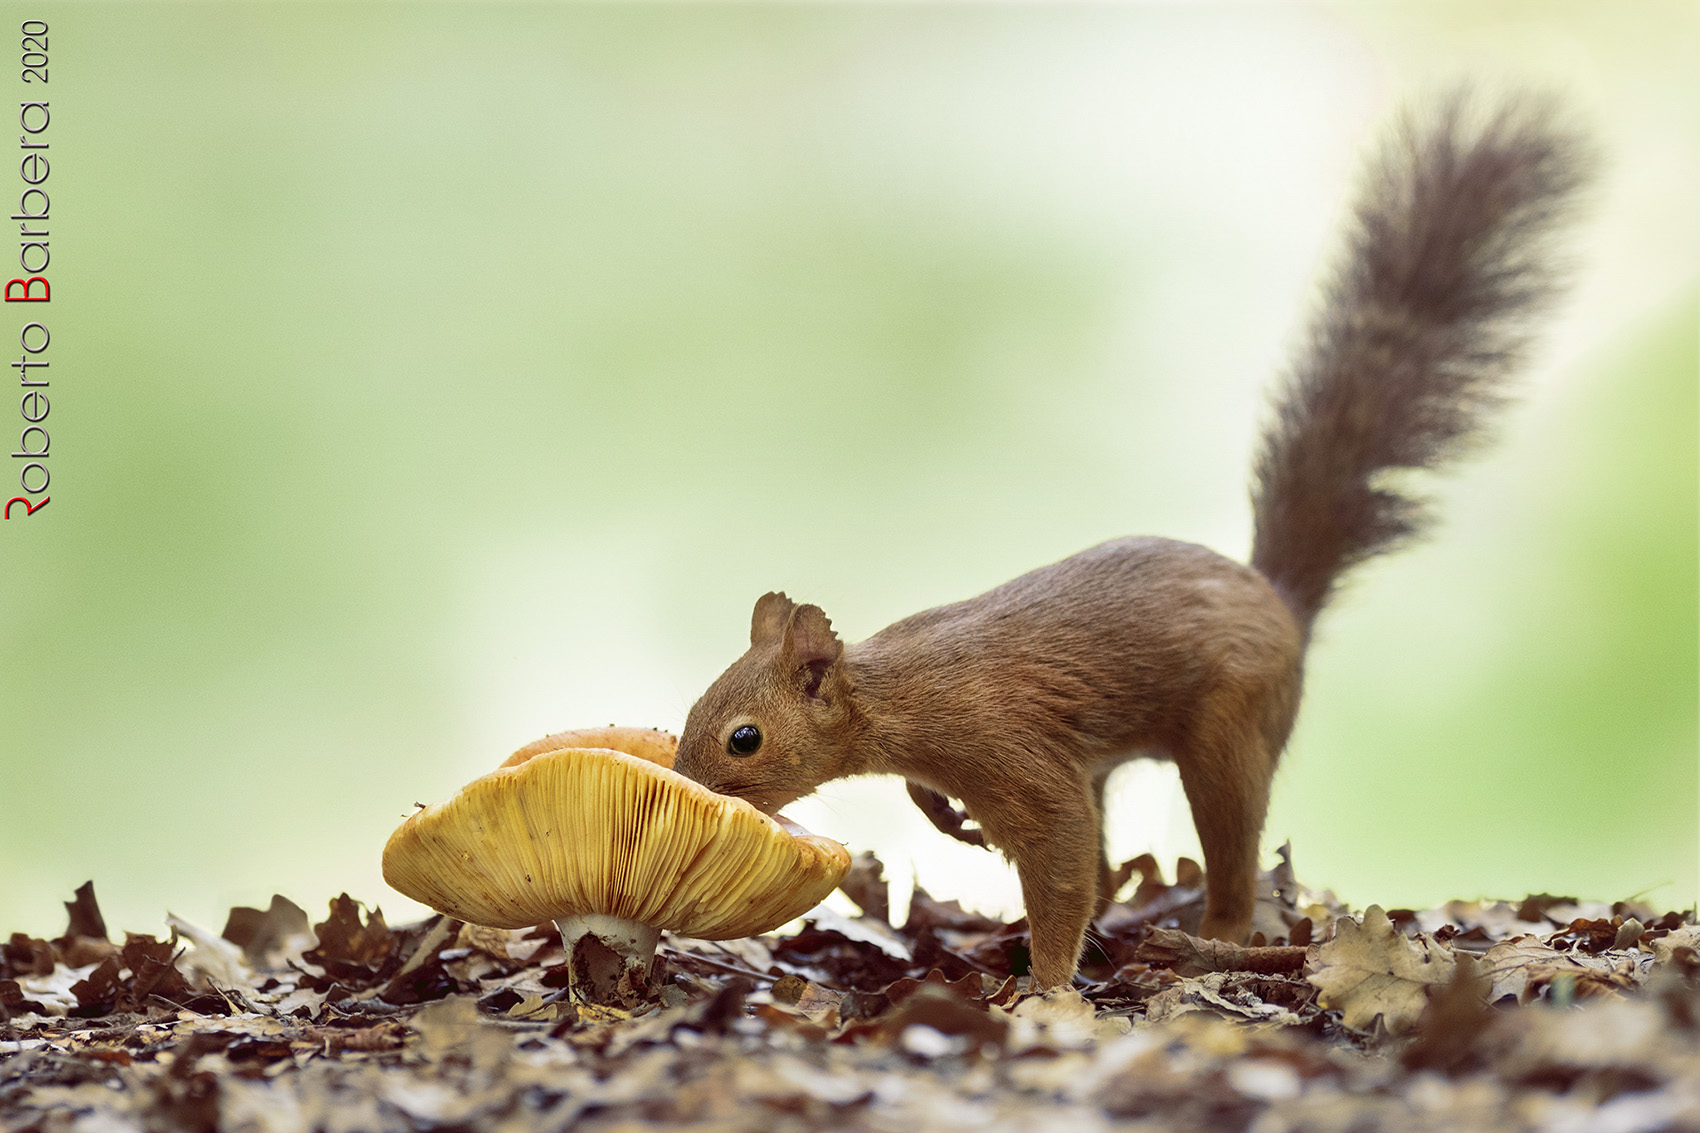 La scoiattolina annusa cautamente il fungo, sarà buono?...